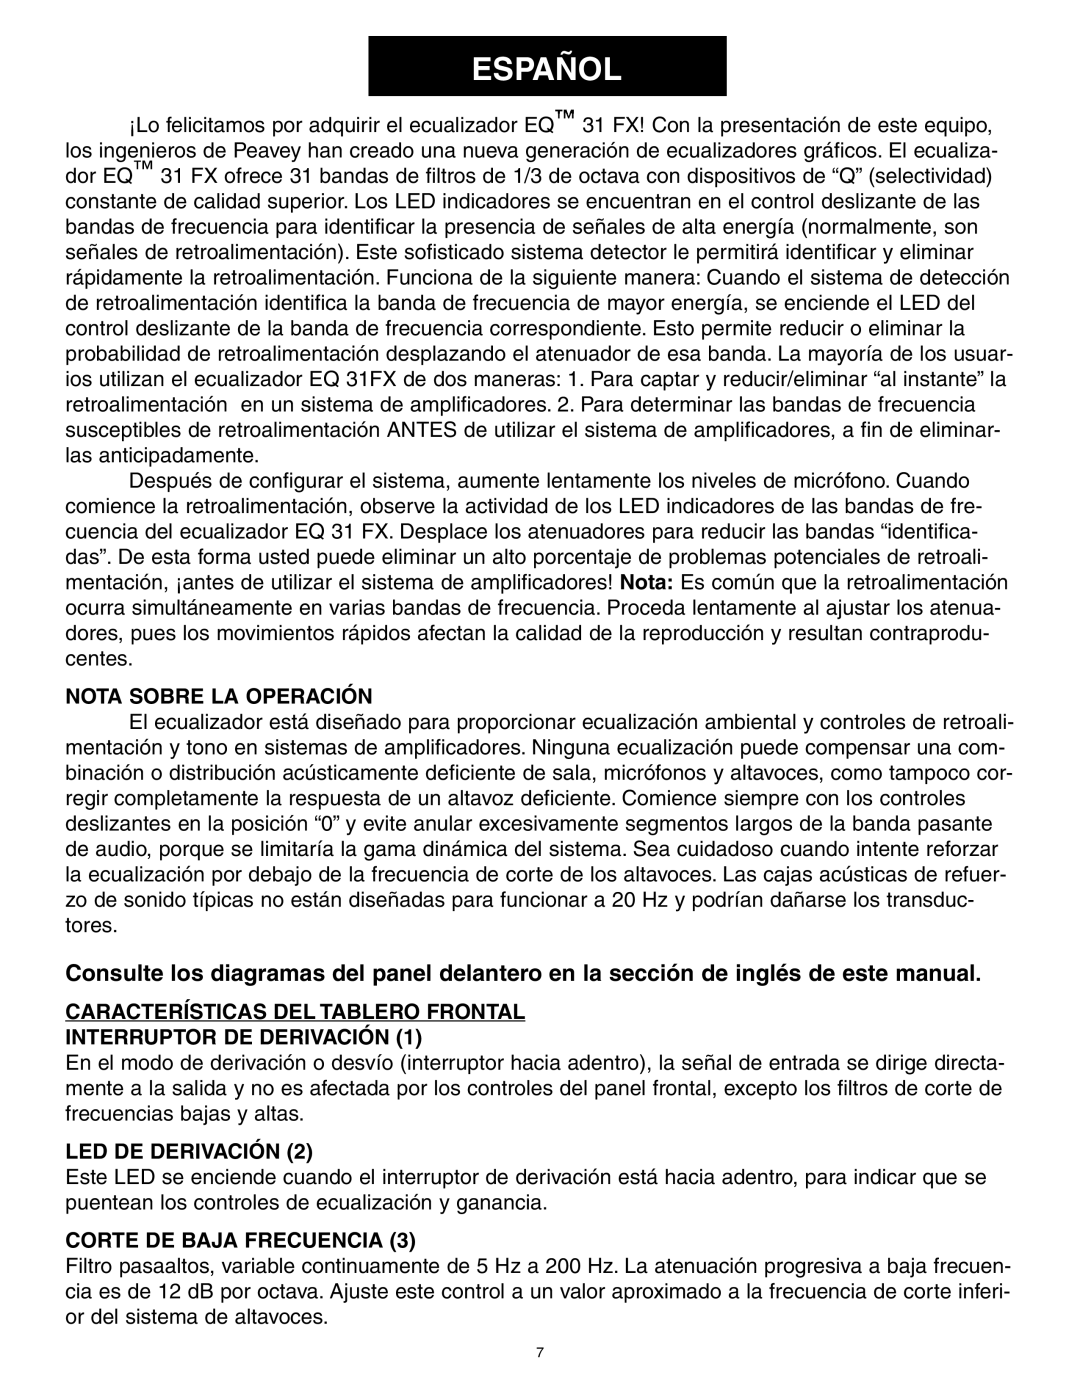 Peavey 31FX owner manual Español, Nota Sobre La Operación, Características Del Tablero Frontal, Interruptor De Derivación 